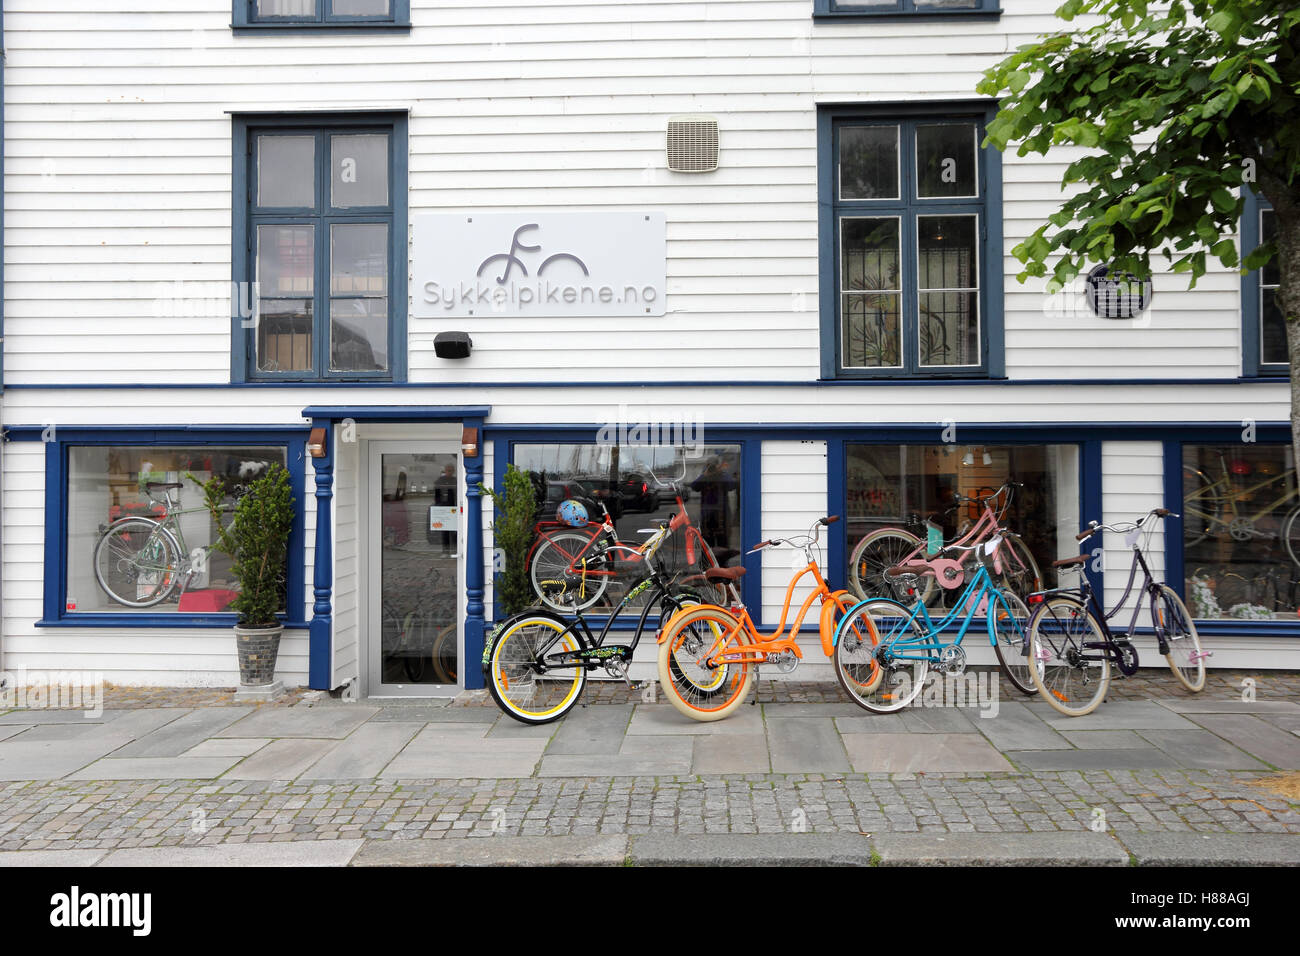 Sykkekpikene location boutique, Stavanger, Norvège Banque D'Images